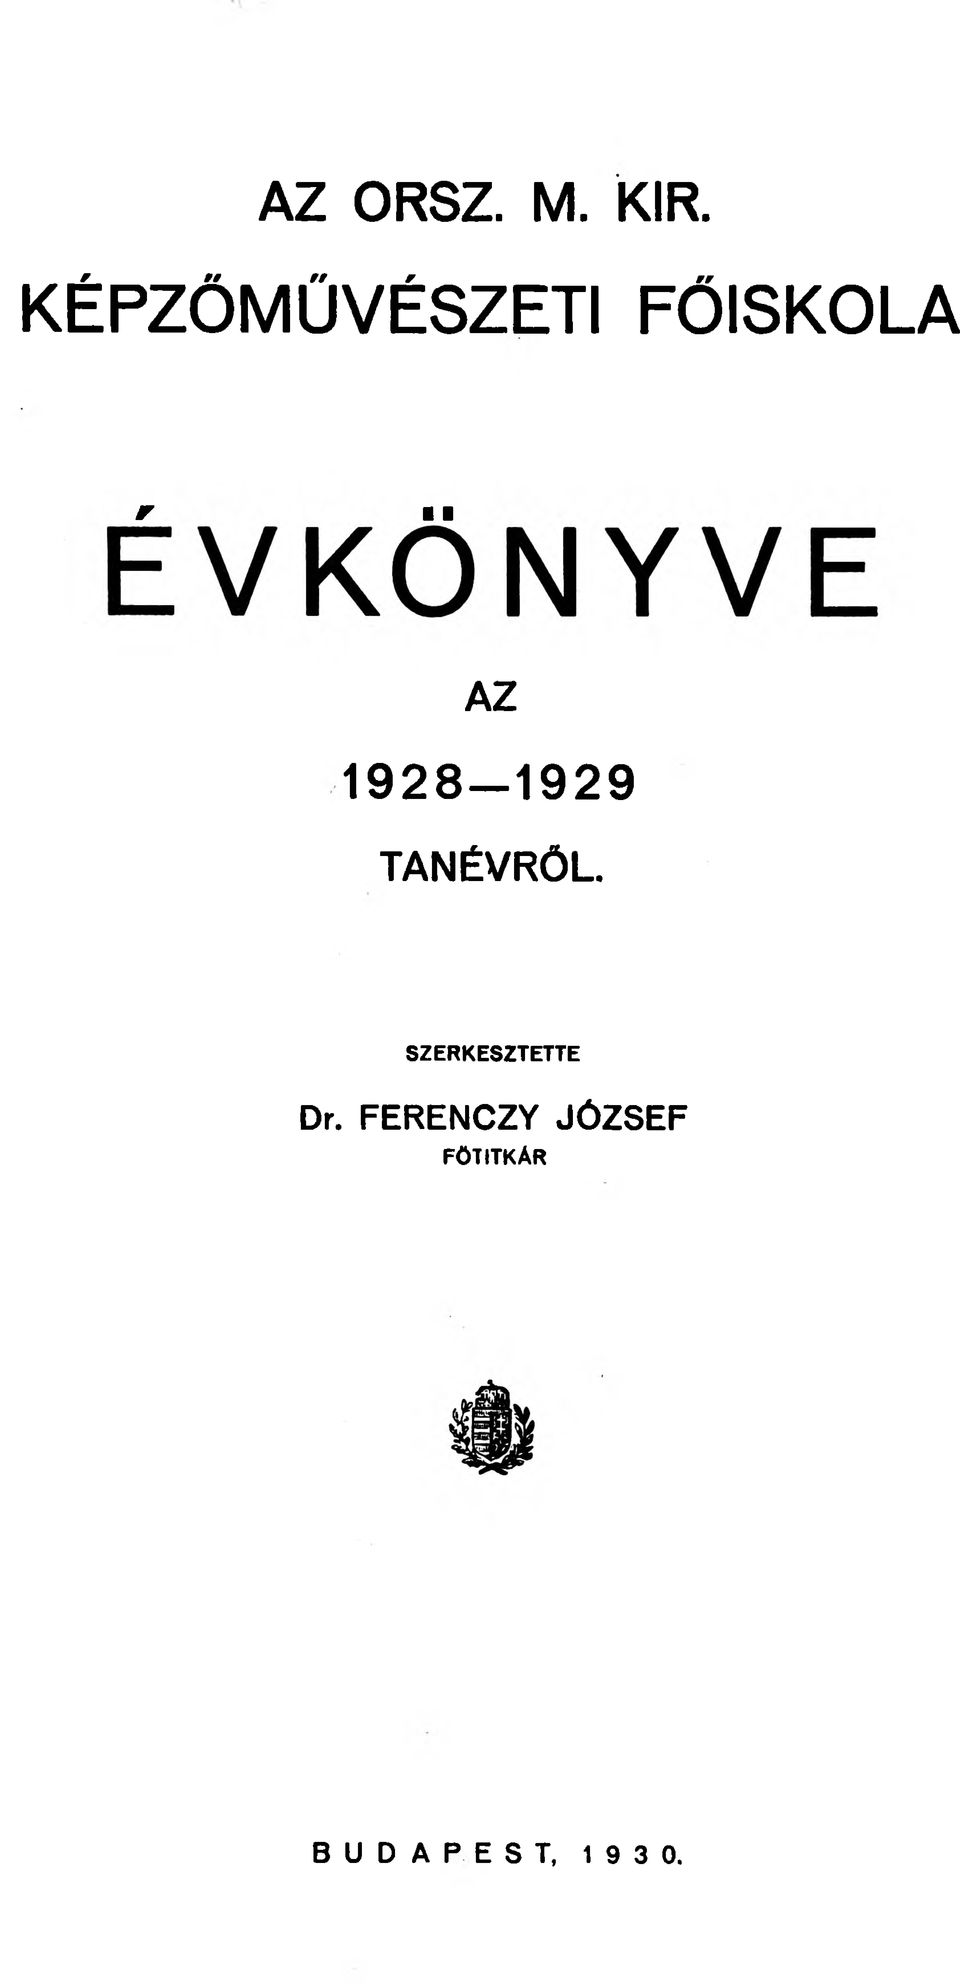 1928-1929 TANÉVRŐL.